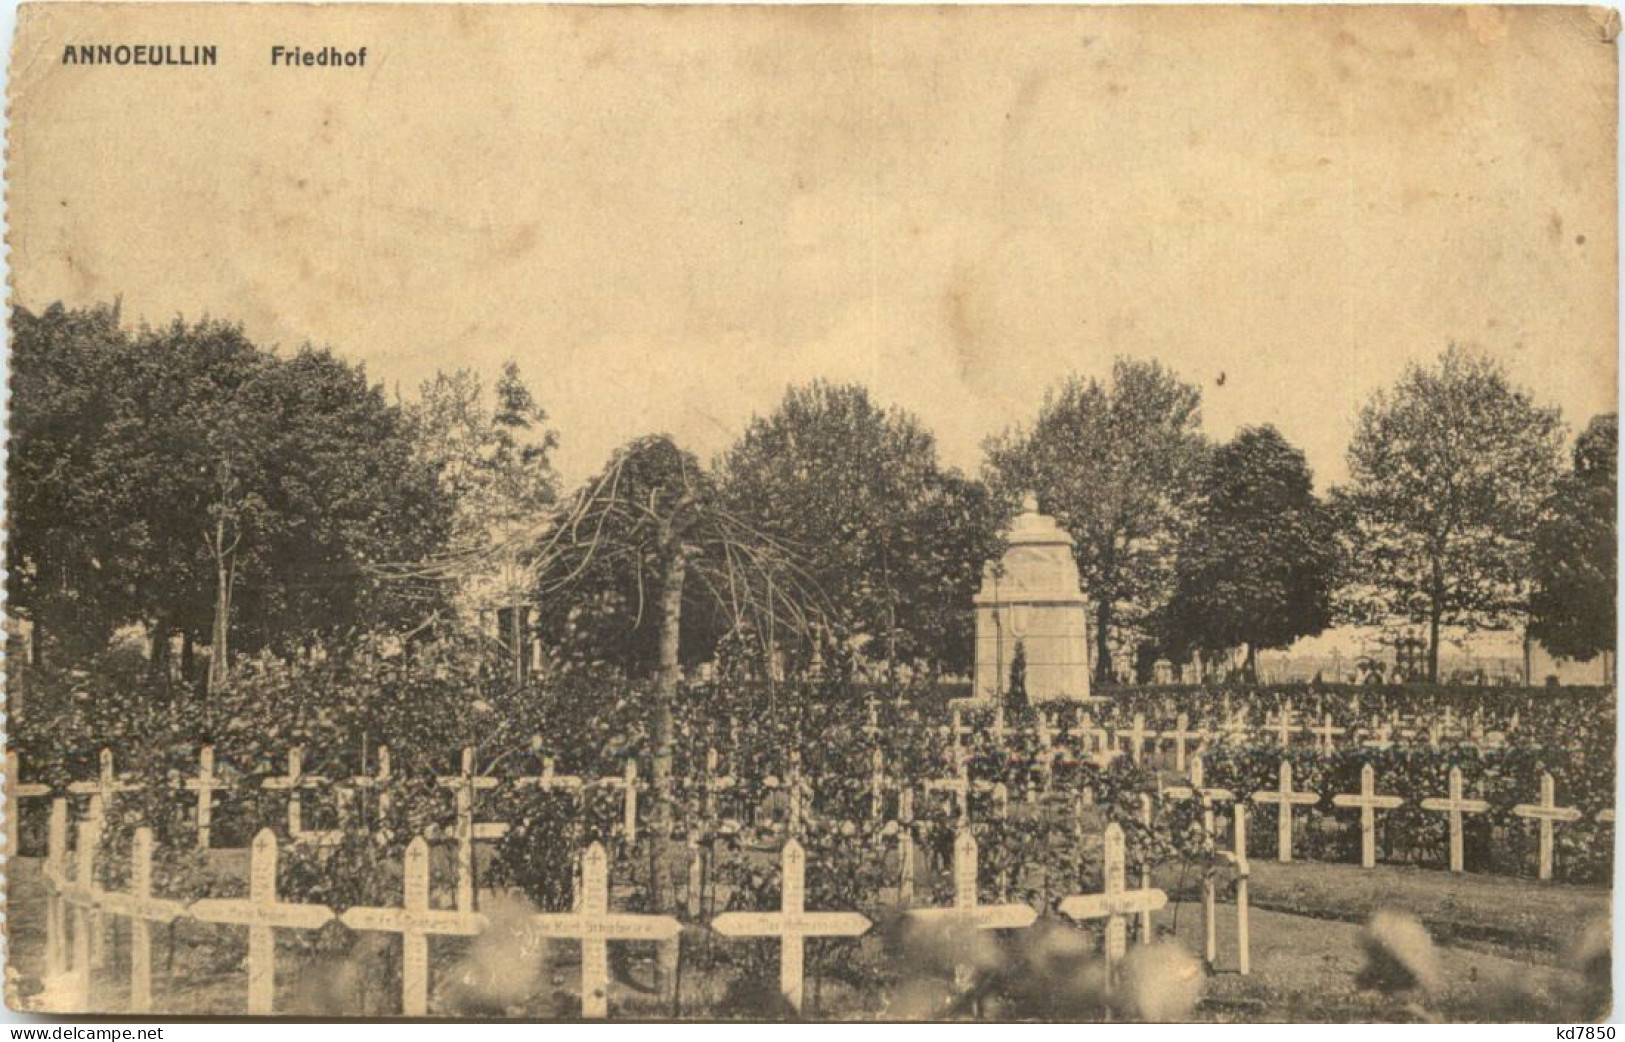 Annoeullin - Friedhof - Feldpost 30. Inf Division - Cimiteri Militari